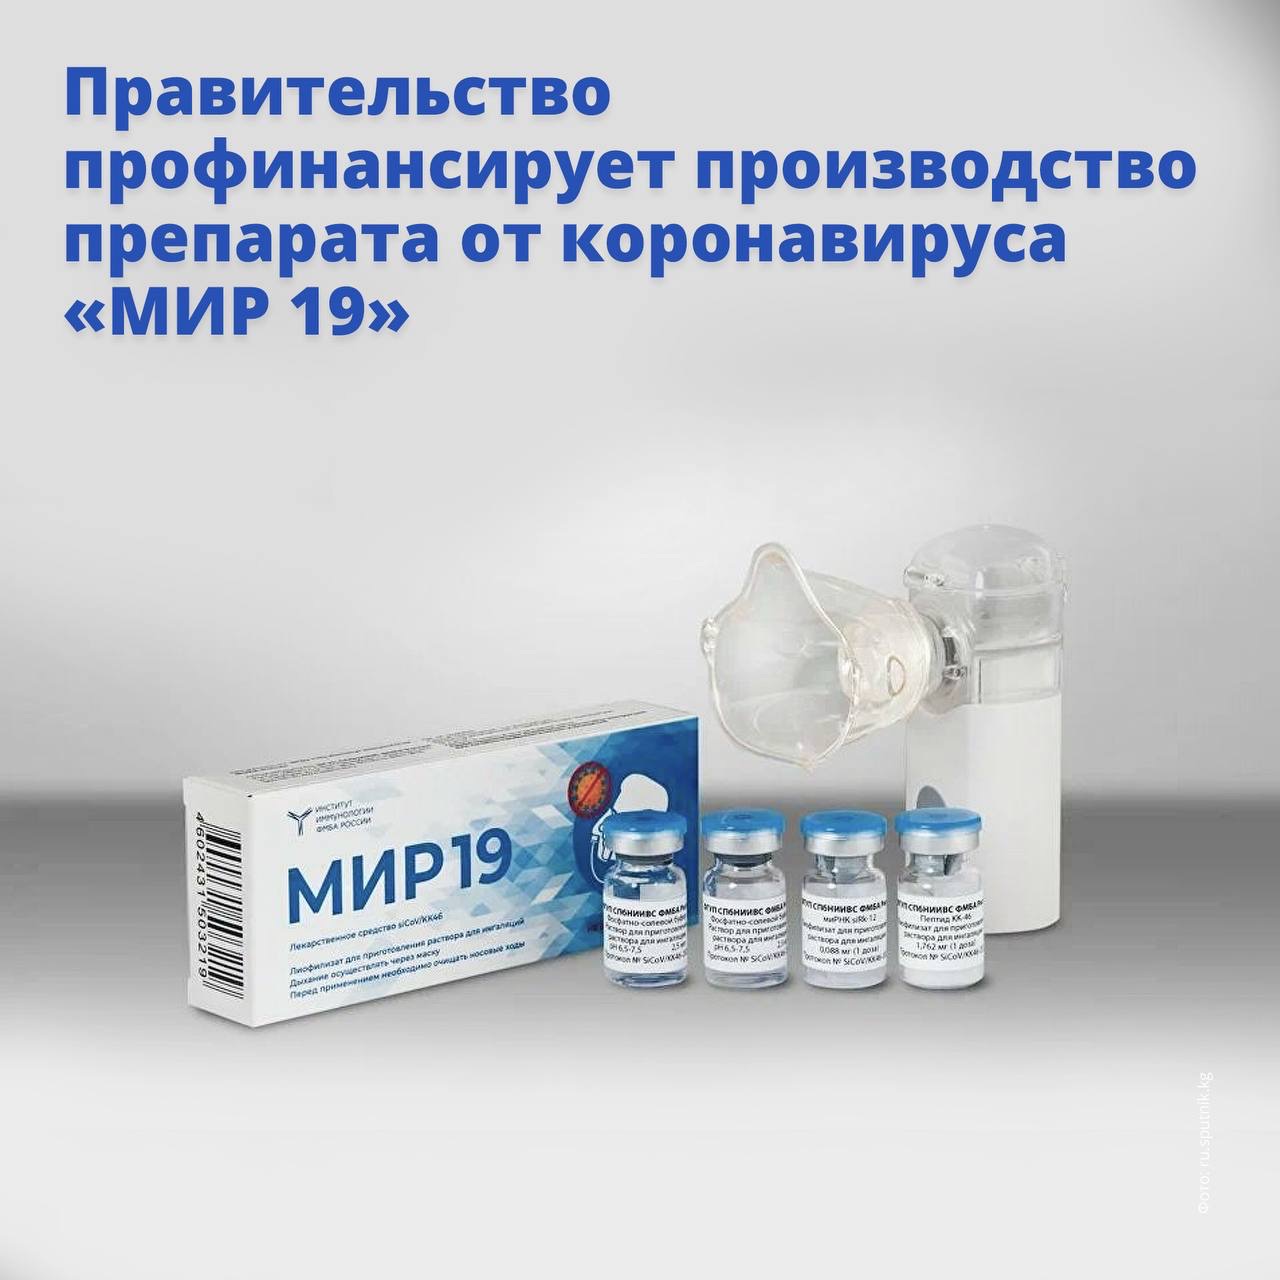 В России начнут выпускать новый препарат от коронавируса «МИР 19».